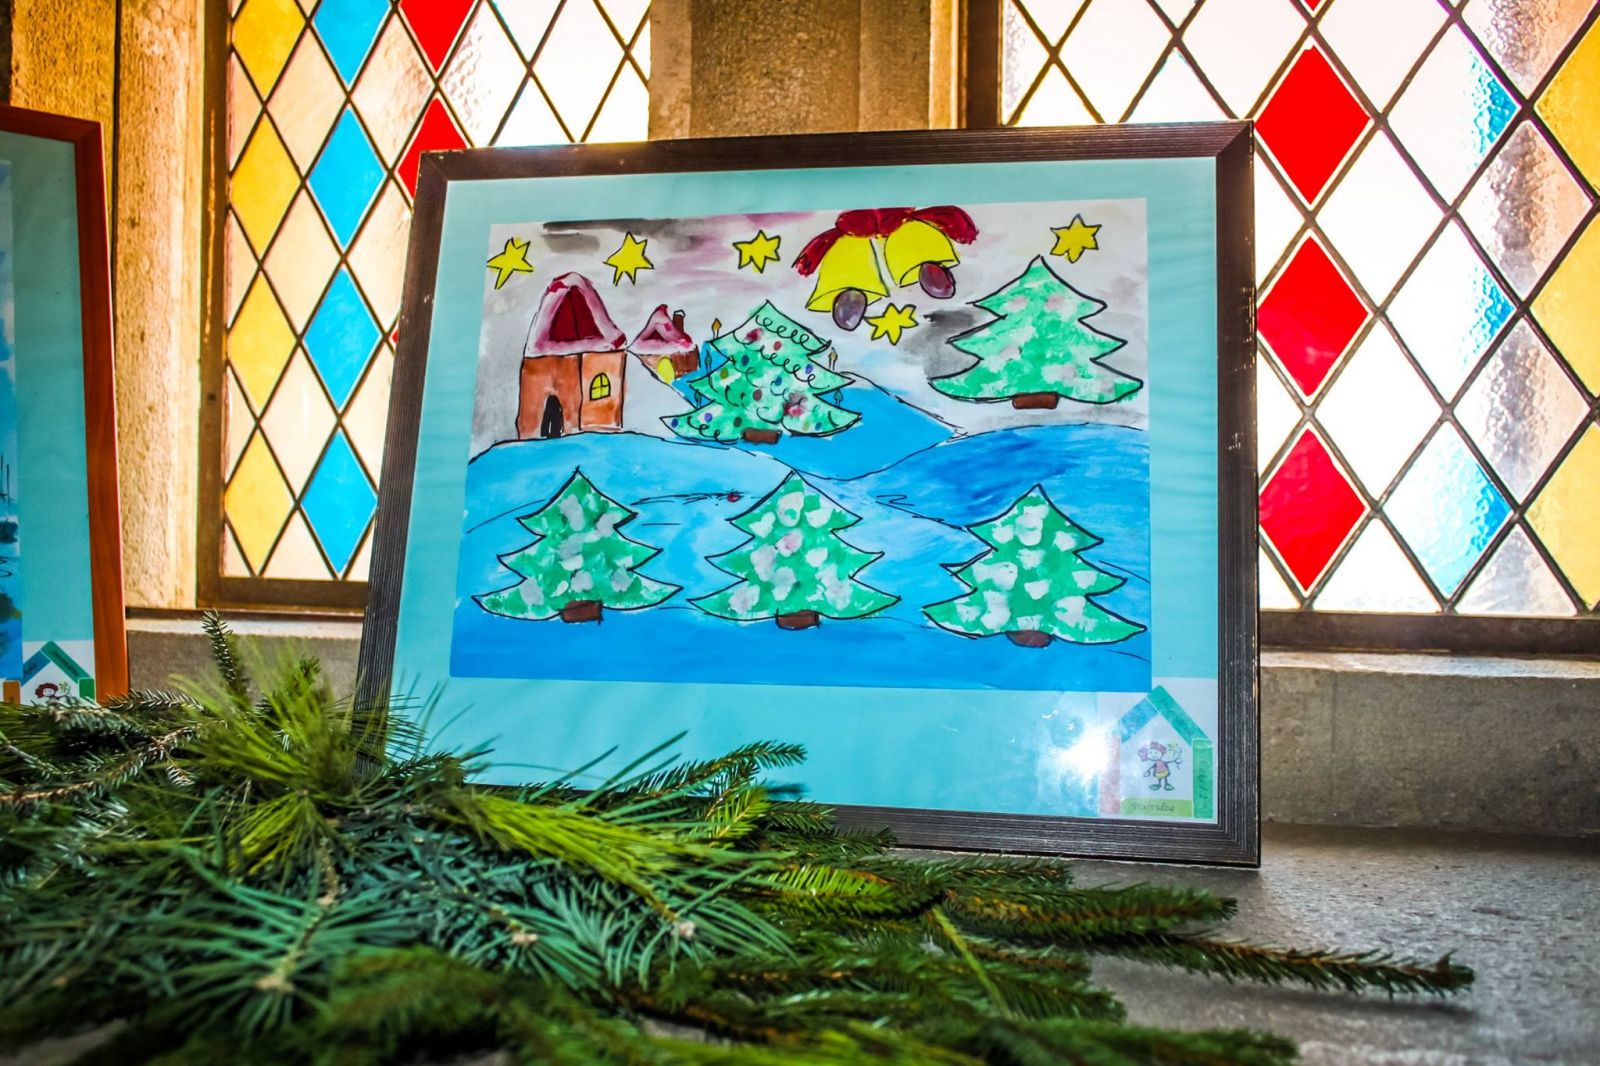 Tí pod vedením pedagógov pripravili bohatú kolekciu obrazov a vianočných dekorácií, ktorými prispejú k tohtoročnej sviatočnej výzdobe zámku. 